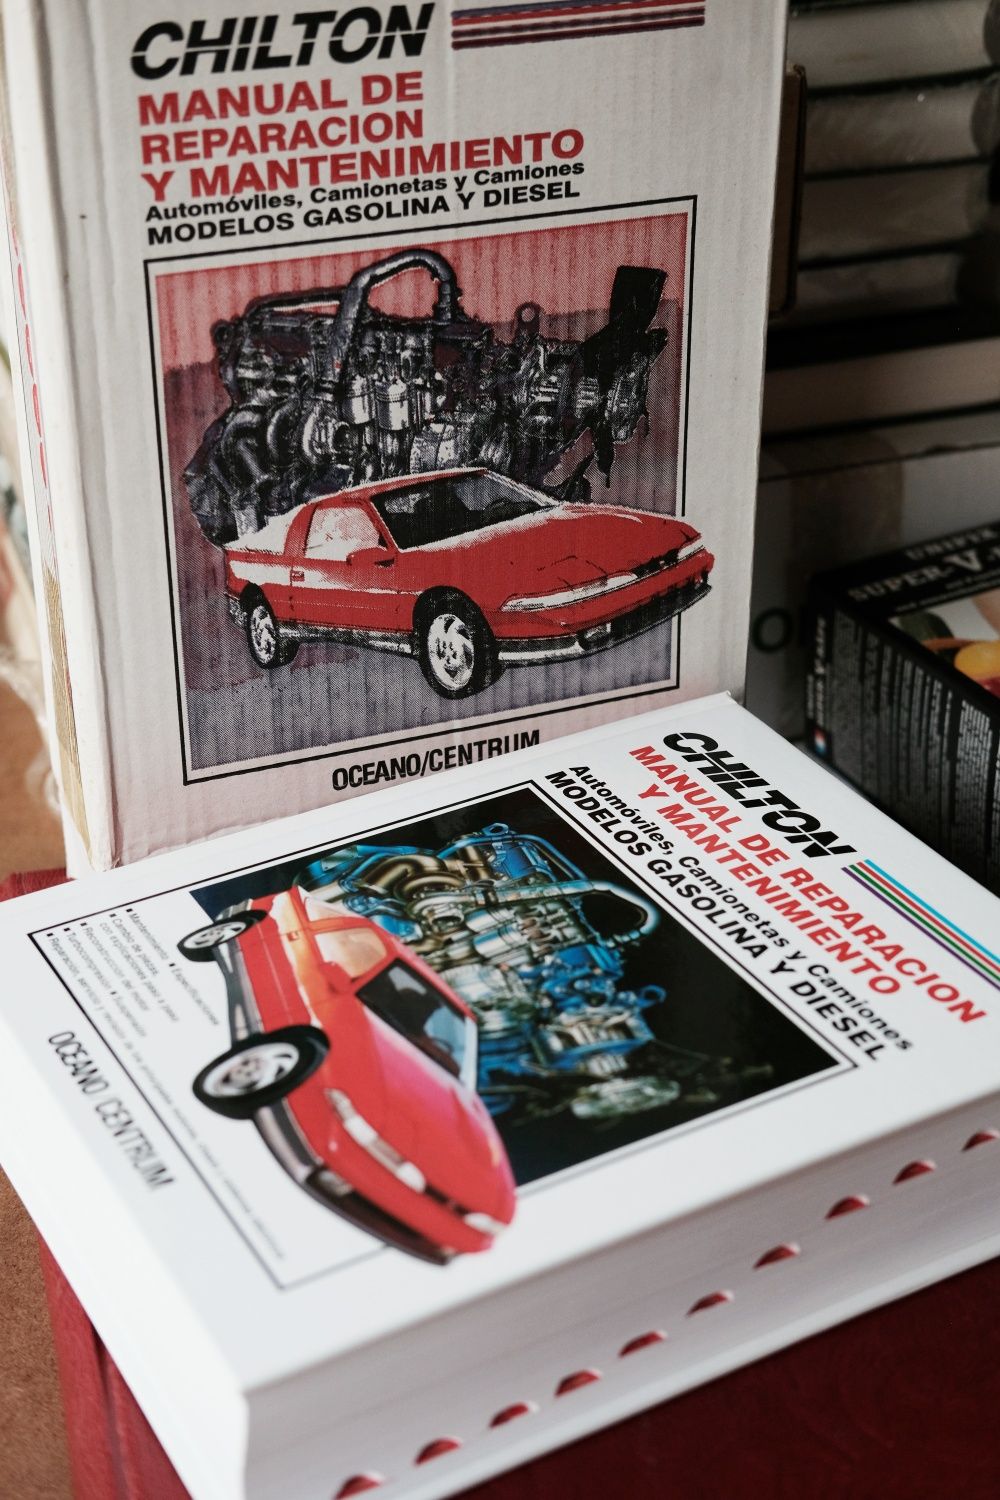 Chilton, manual de reparacion y mantenimiento - Honda, Nissan, Ford...